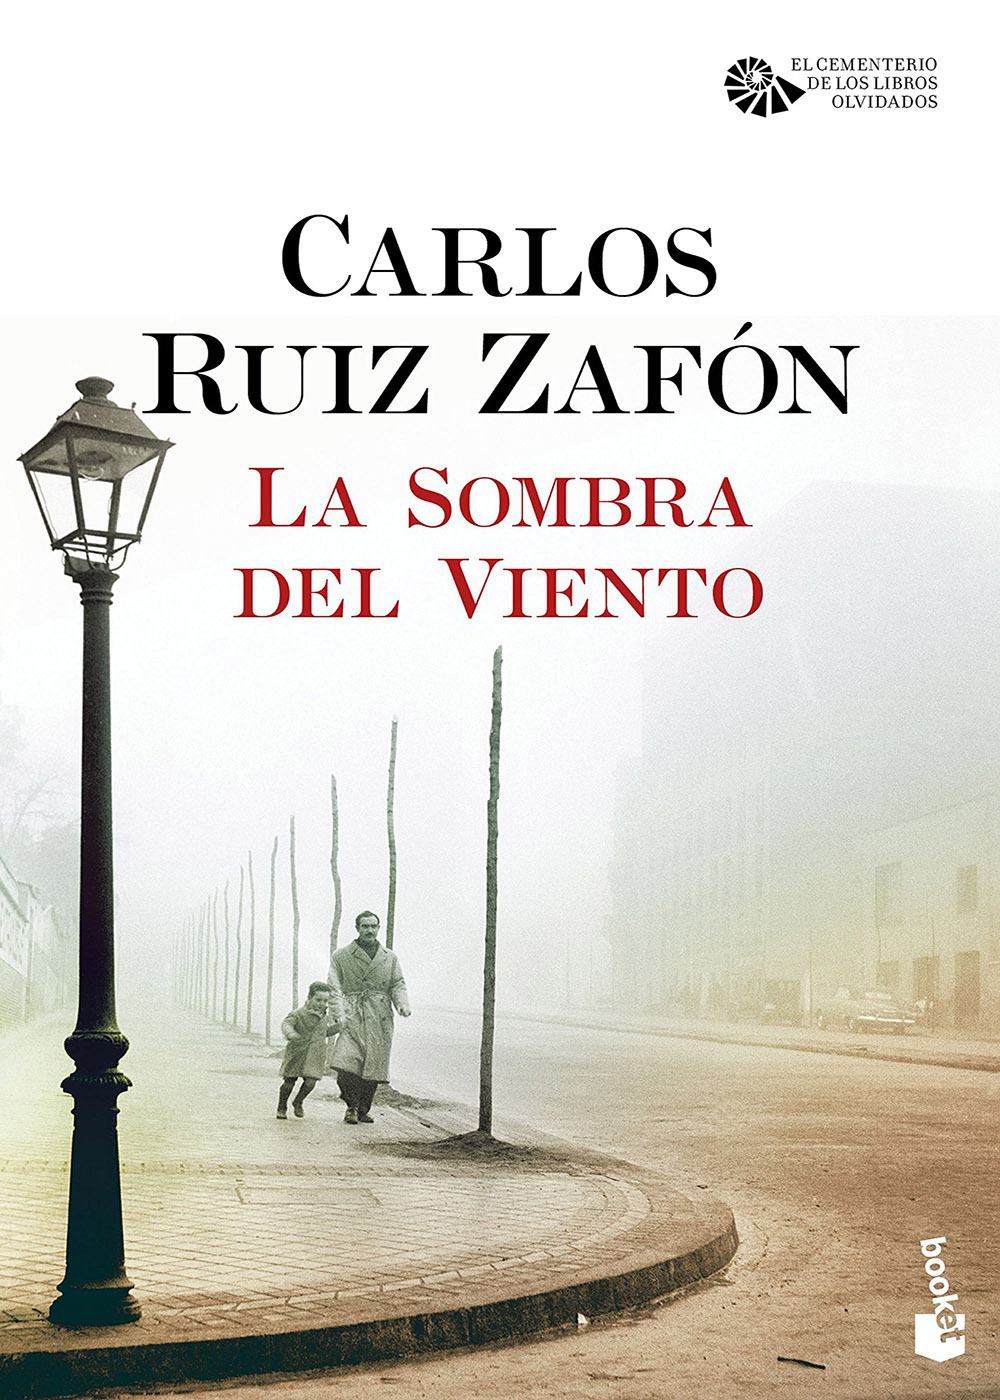 Carlos Ruiz Zafón - La sombra del viento